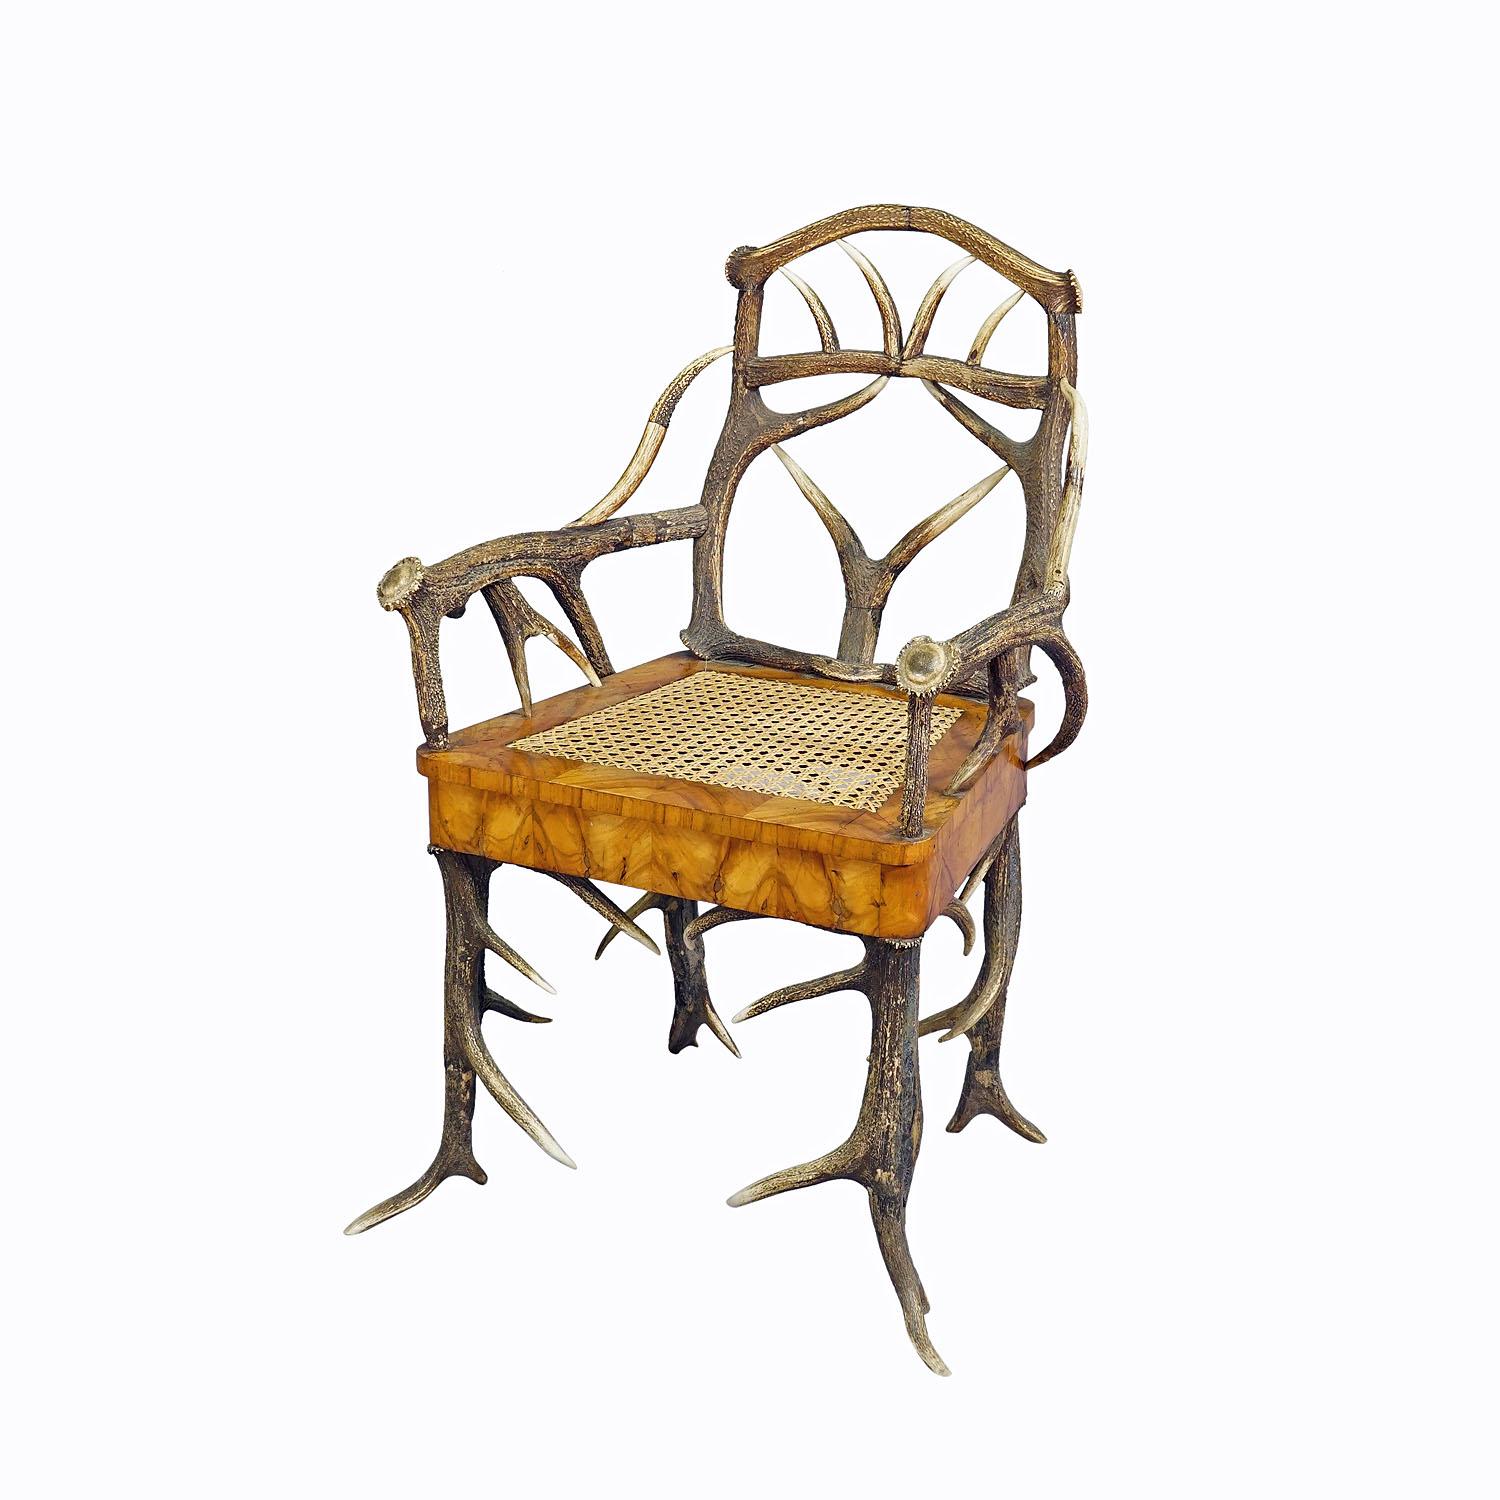 Chaise à accoudoirs en bois de la forêt noire par J. A. K. Horn, Turingen 1840s

Fauteuil ancien en bois de cerf de la Forêt-Noire, avec de véritables bois de cerf et de chevreuil en guise de pieds, d'accoudoirs et de dossiers, assise en placage de